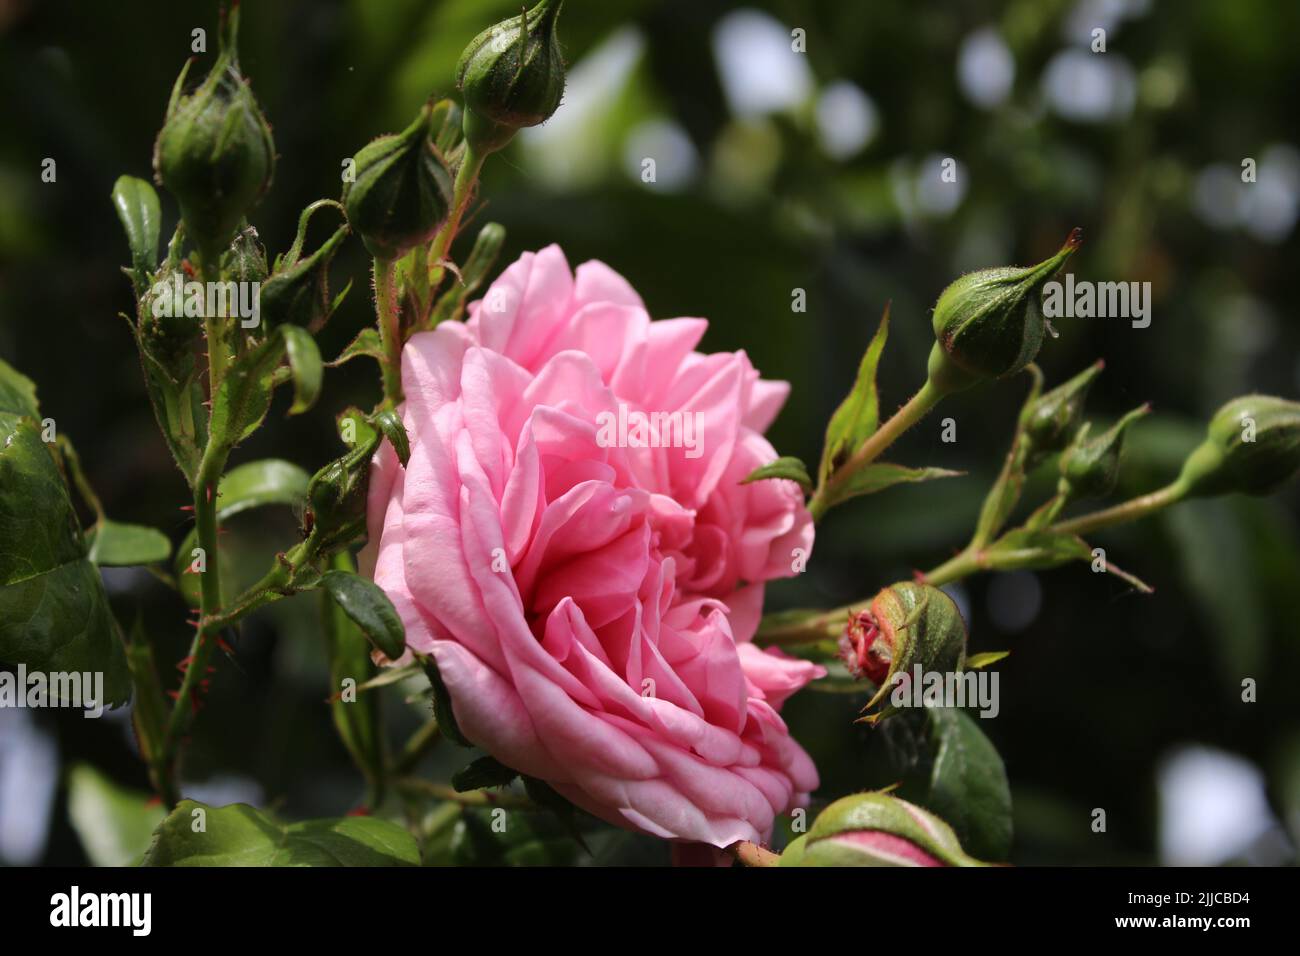 Inflorescence de rose. Photographie de la Reine des fleurs. Un arbre broussaillé aux fleurs roses. Les Rosebuds sont entourés de feuilles vertes. Roses épineuses. Banque D'Images